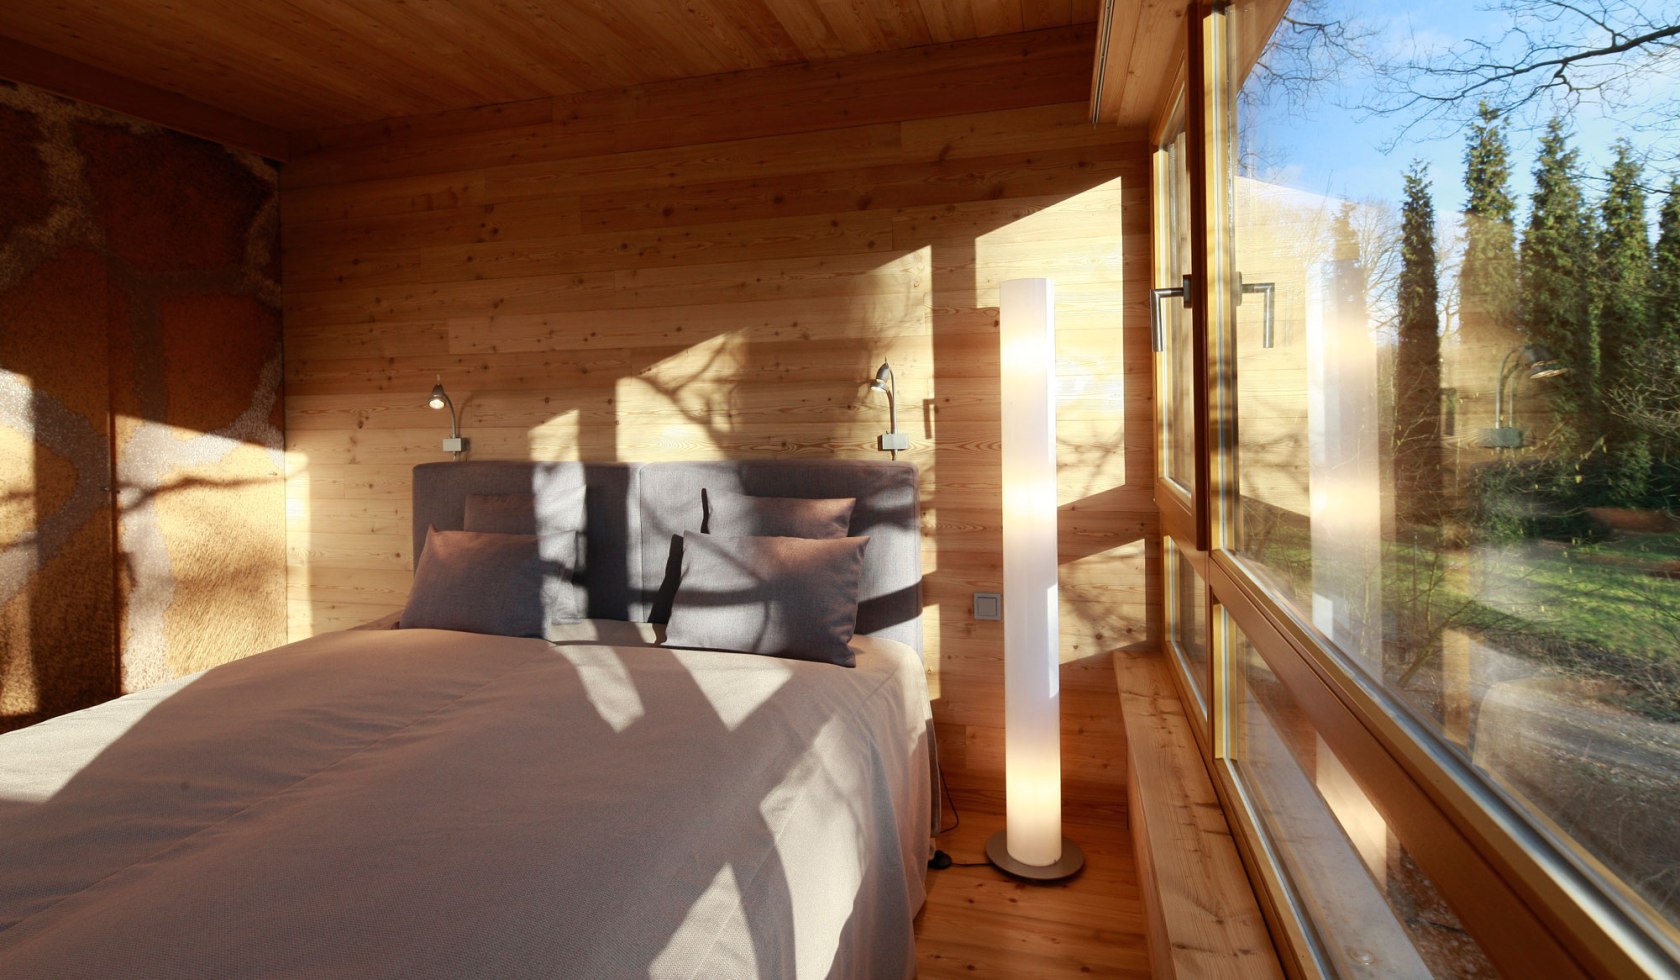 Schlafbereich im Resort Baumgeflüster, © Baumgeflüster